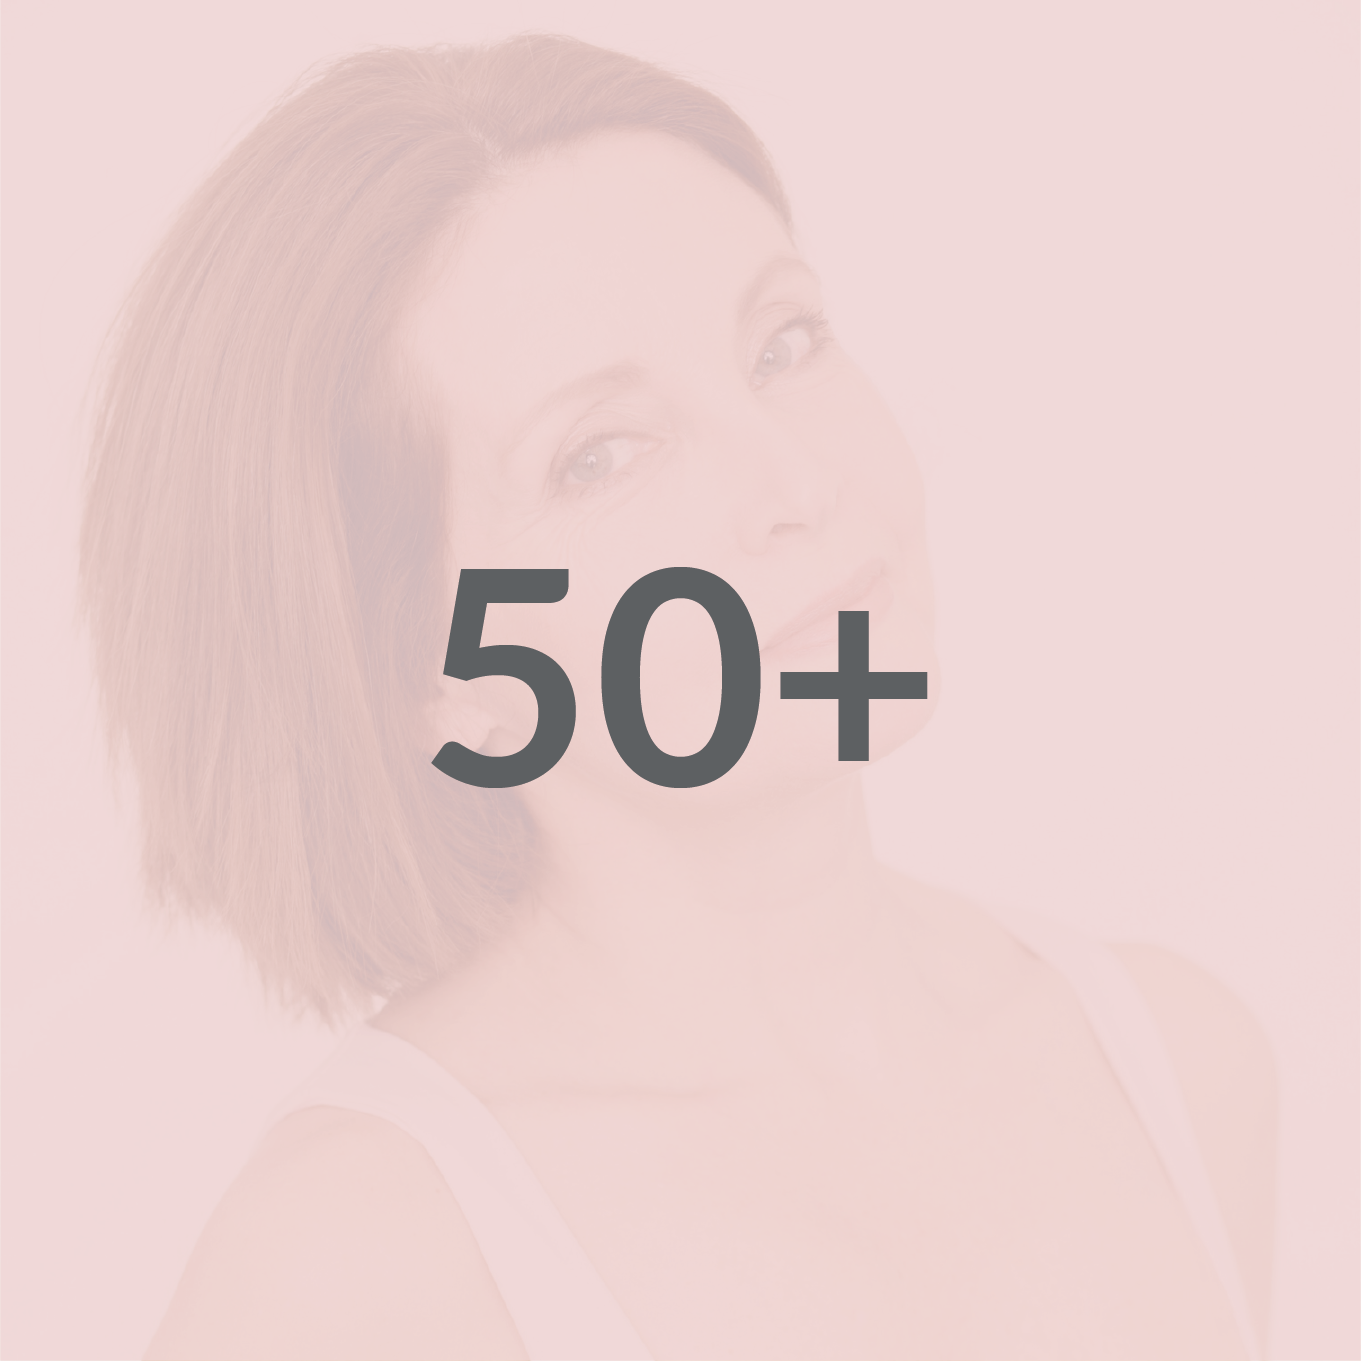 50+